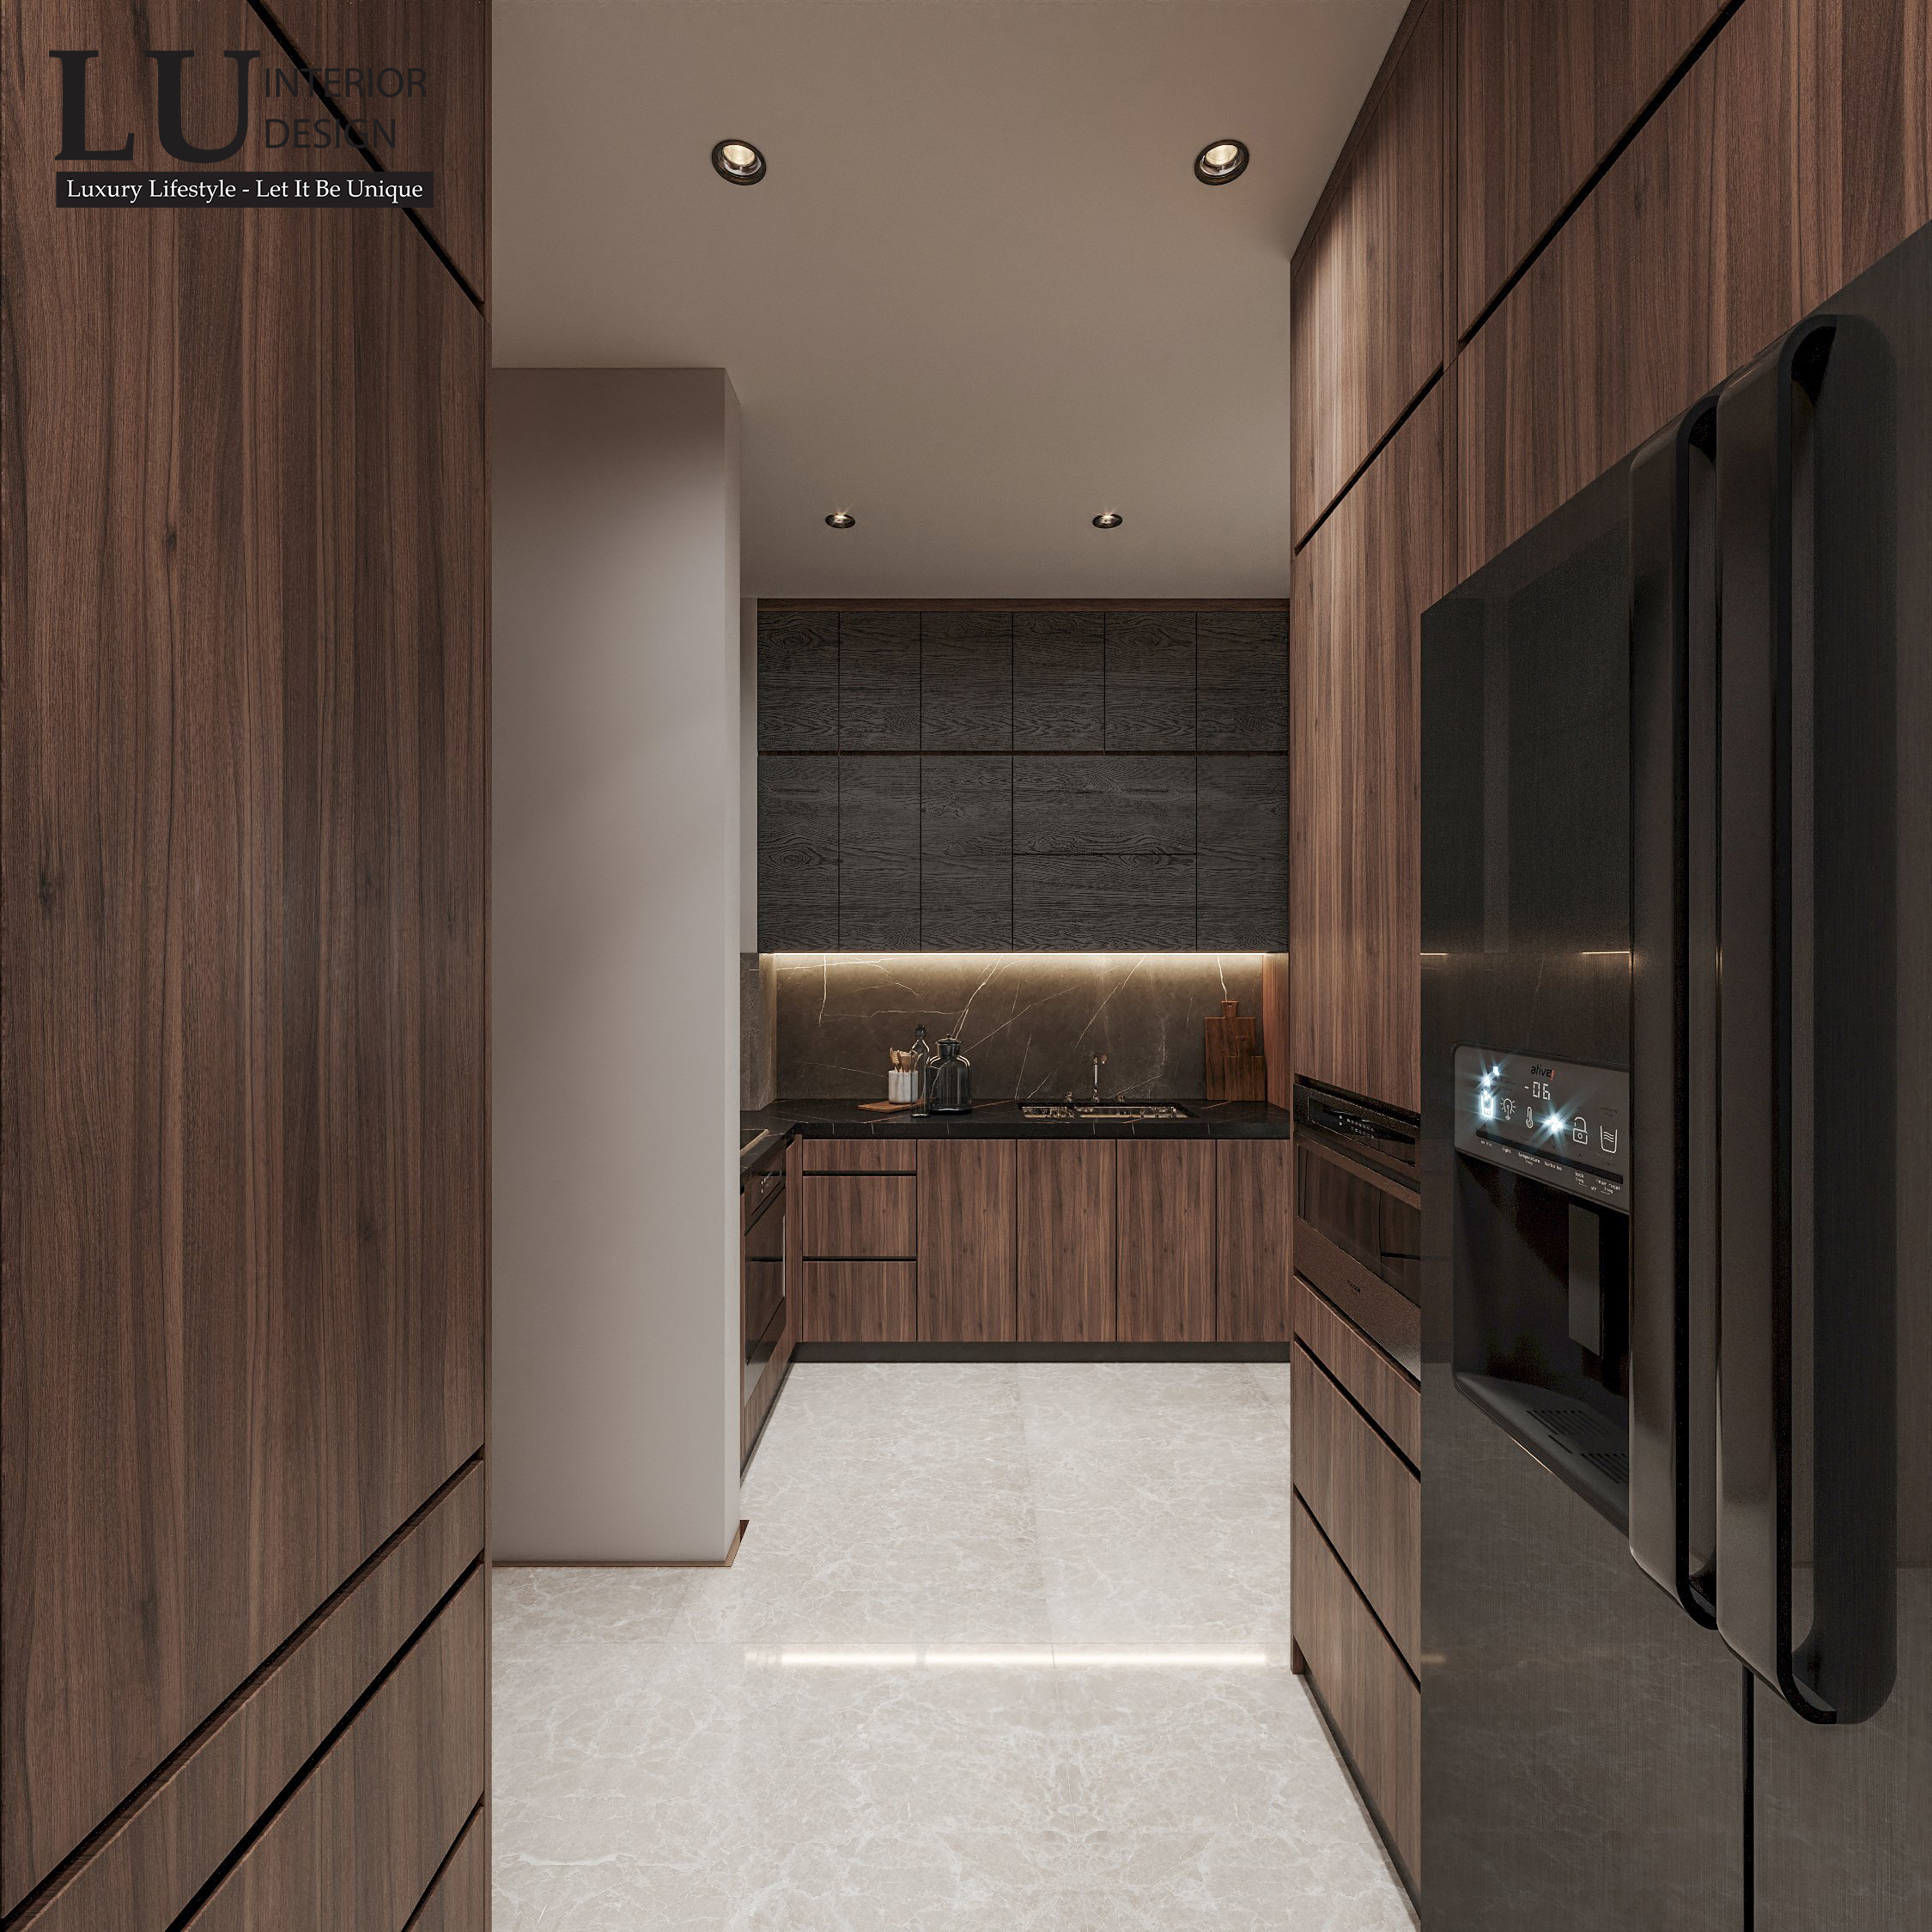 Toàn bộ nội thất phòng bếp đều được ốp bằng gỗ tự nhiên cao cấp mang đến vẻ đẹp sang trọng và hiện đại.